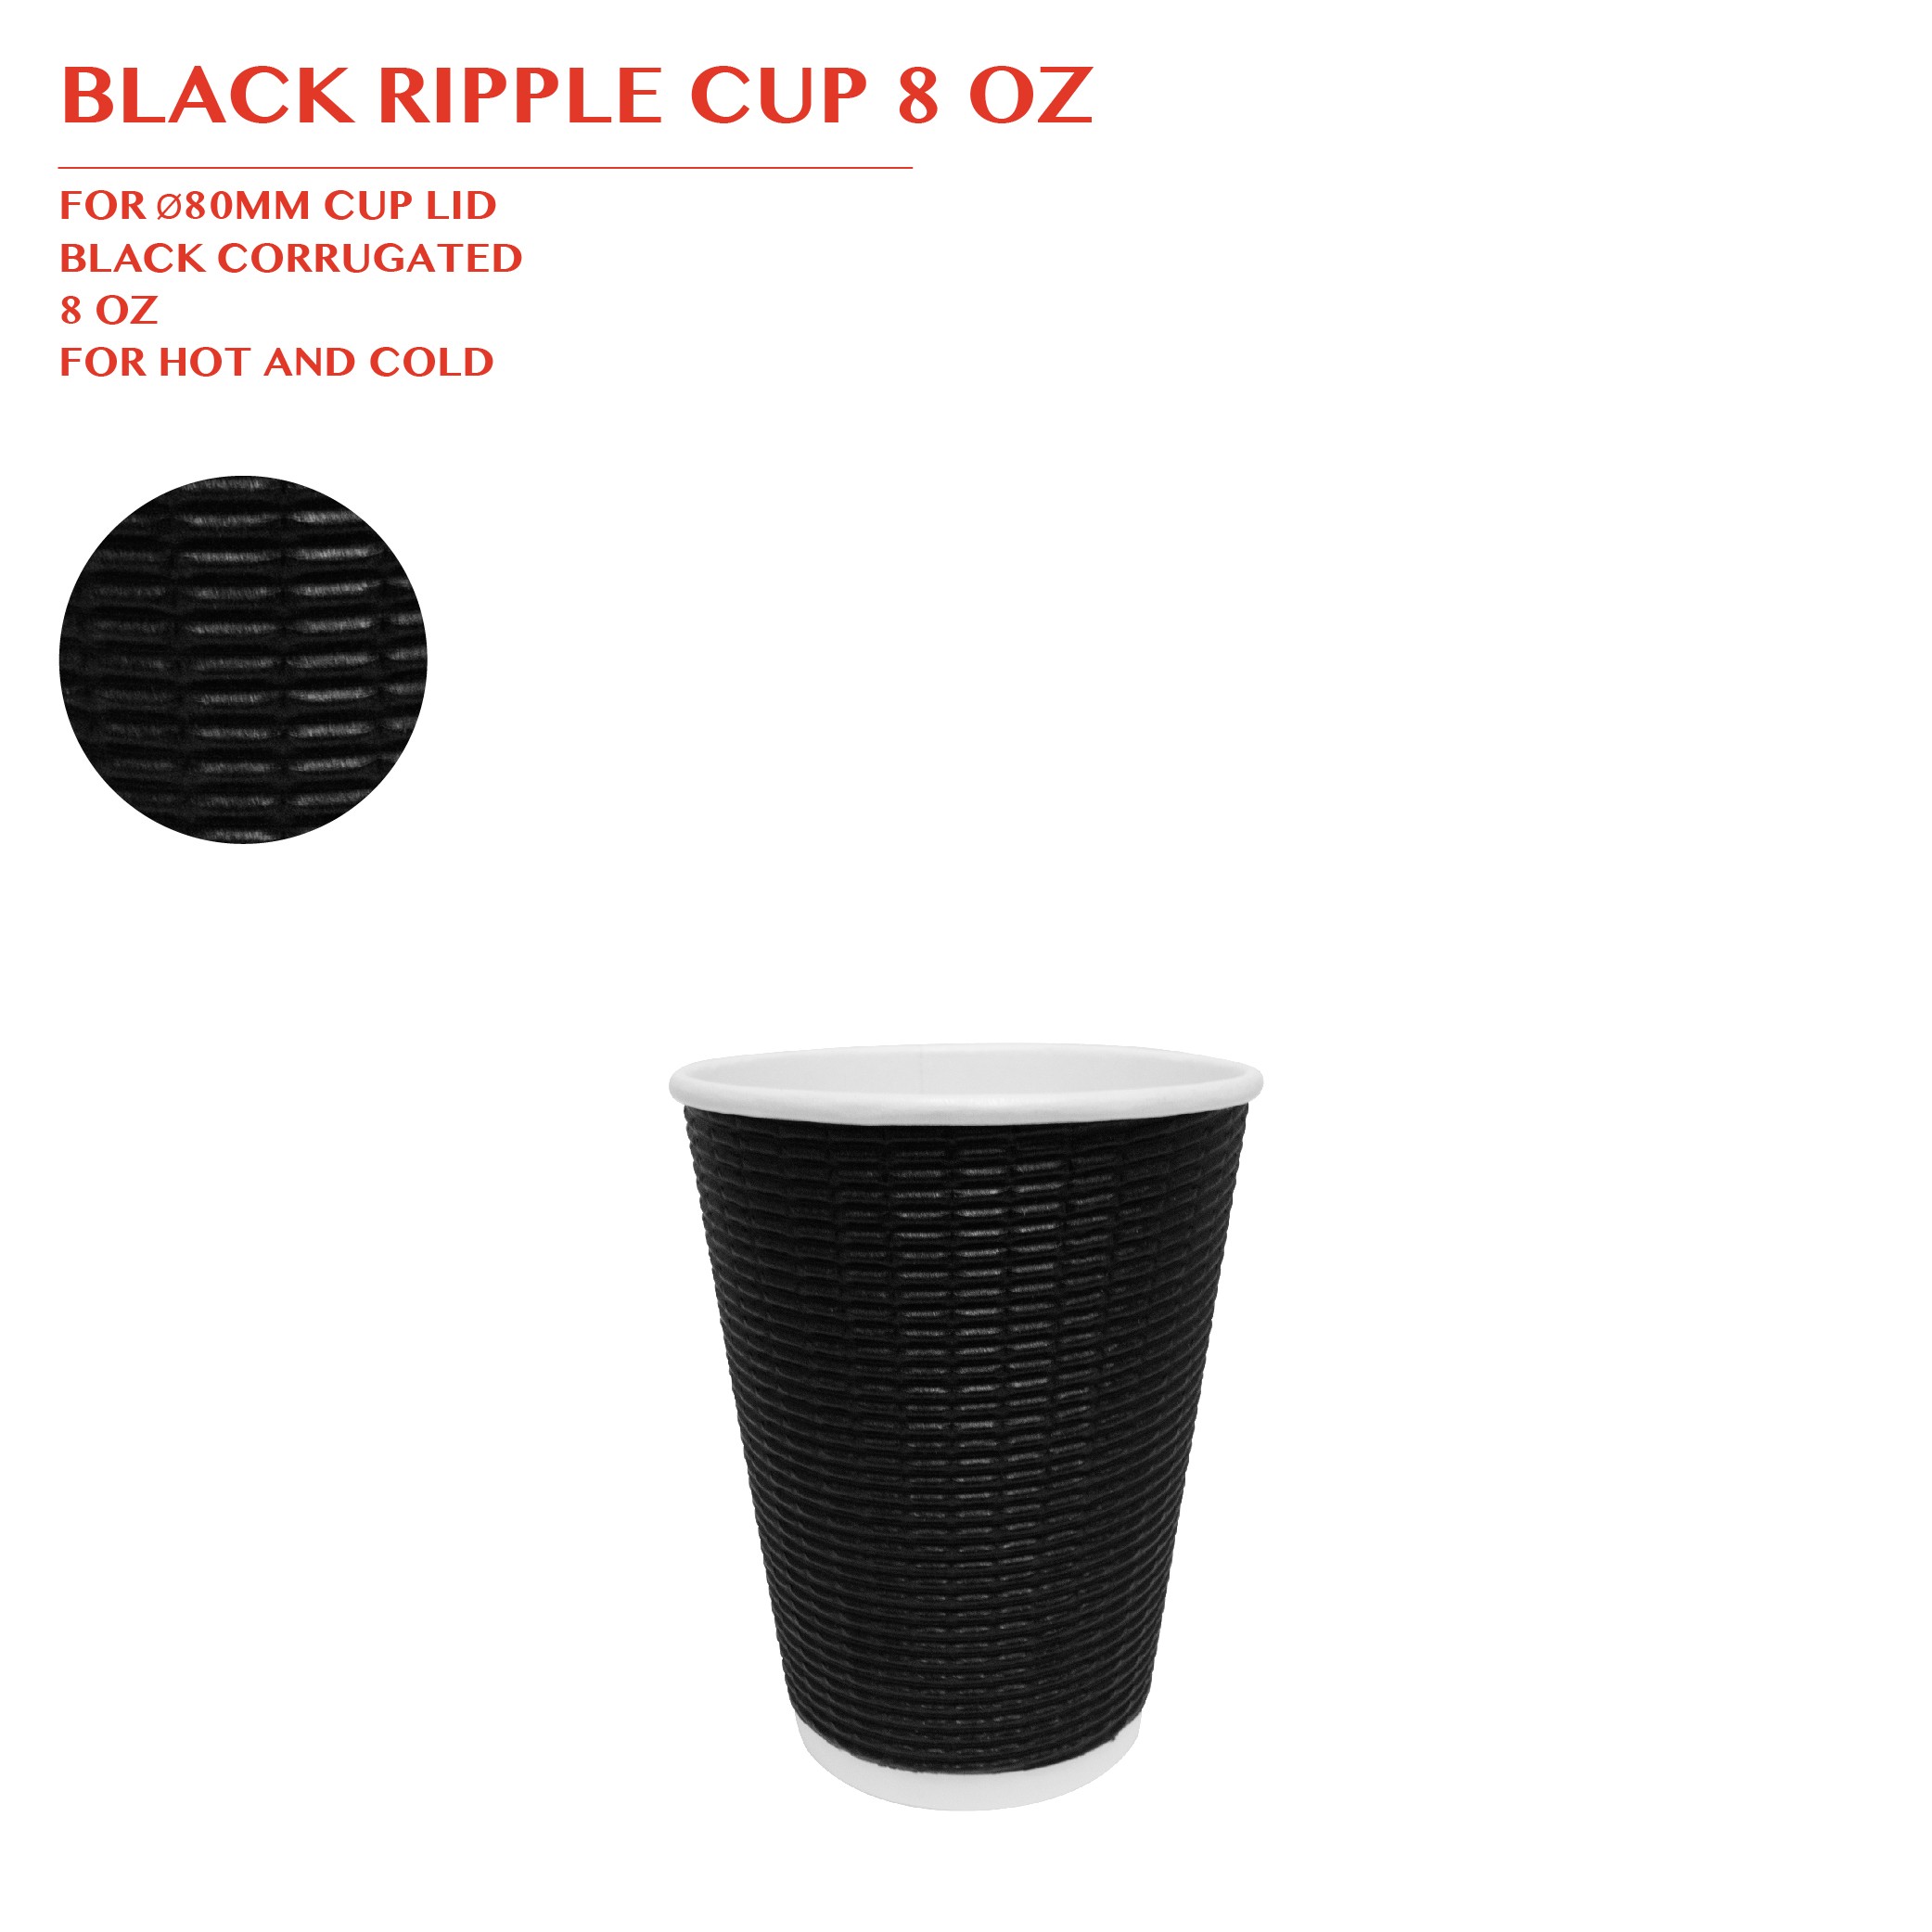 PRE-ORDER BBLACK RIPPLE CUP 8 OZ 500PCS/CTN